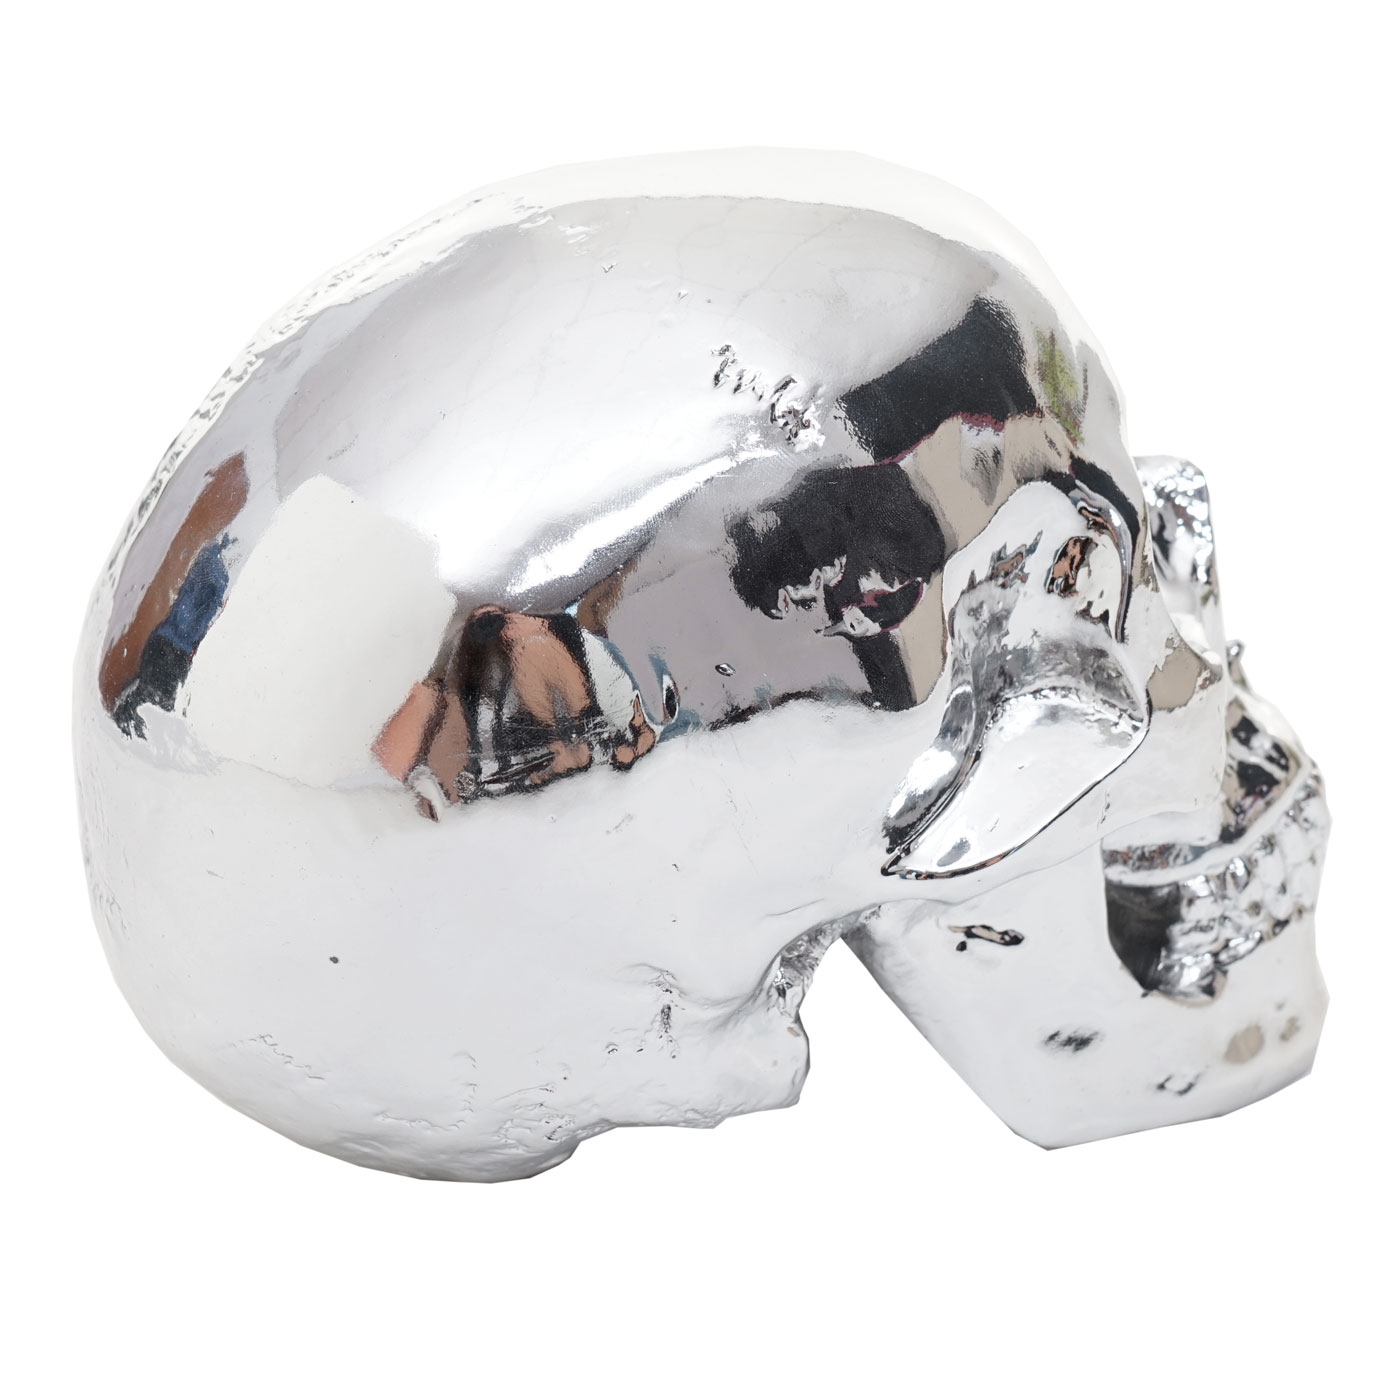 Deko Skull Totenkopf Wandskulptur Silber 42x30 cm mit Nickel Finish aus  AluminiumWOMO-Design günstig online kaufen